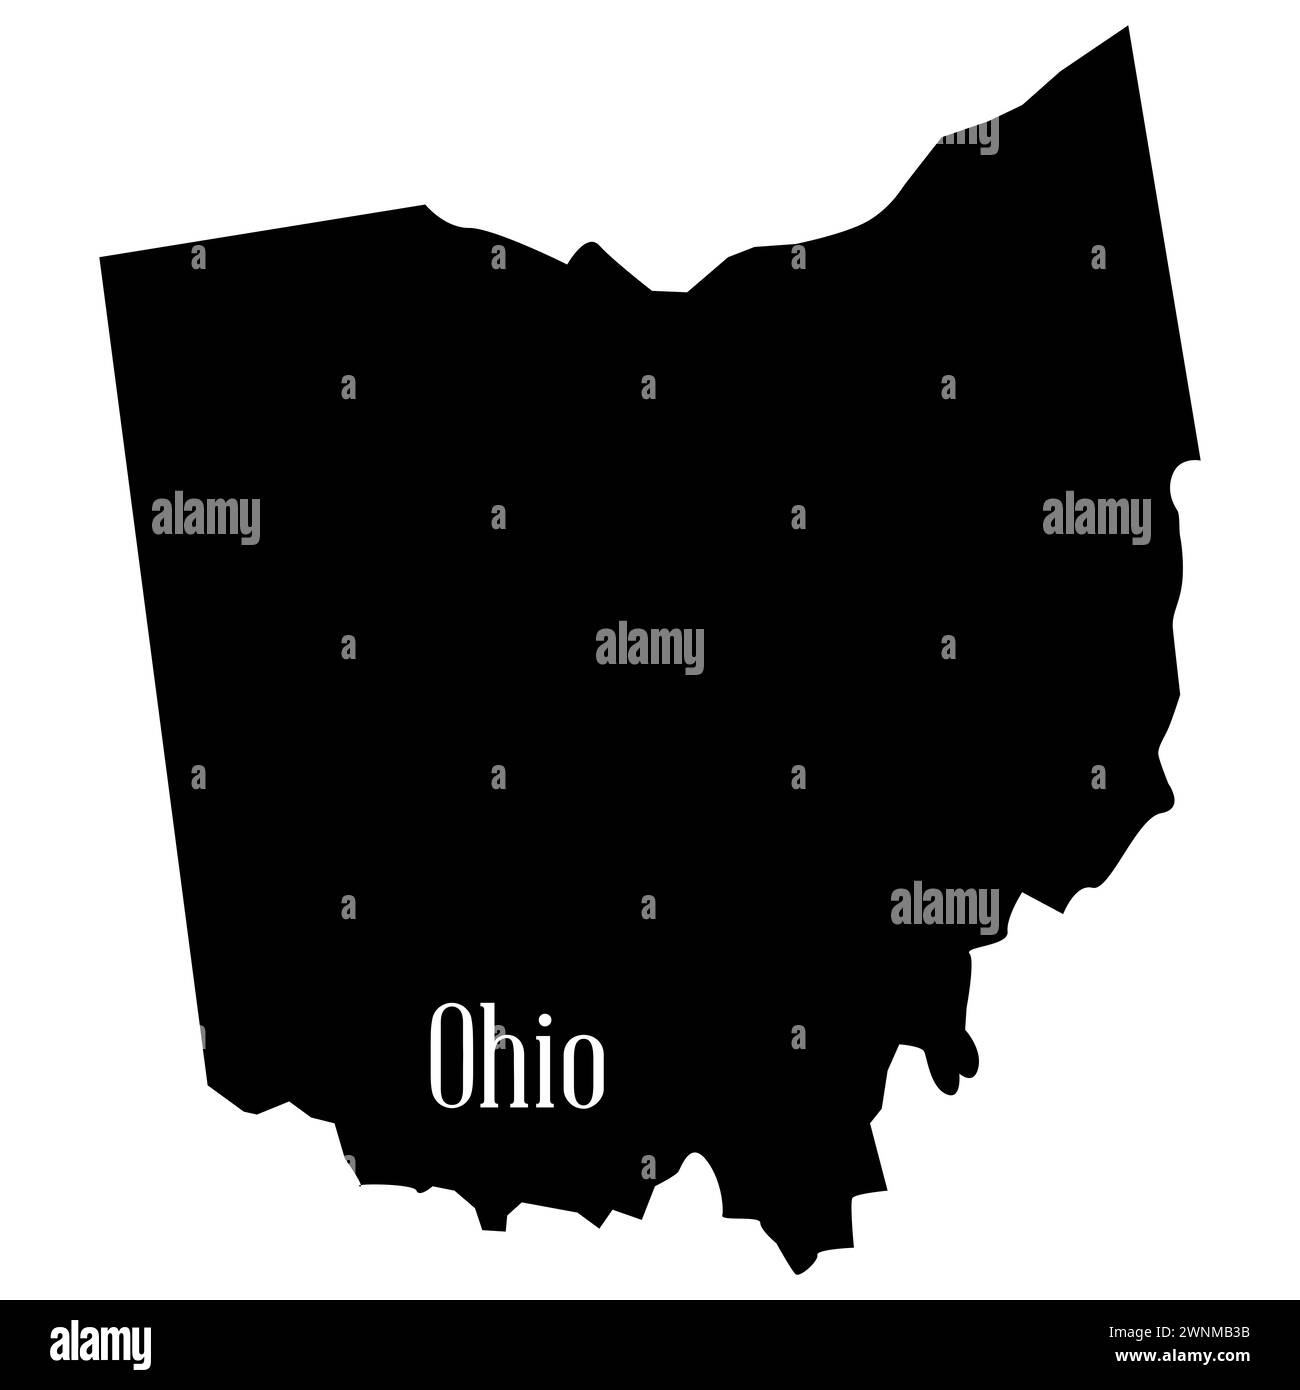 Plan de silhouette de l'état de l'Ohio sur un fond blanc Banque D'Images